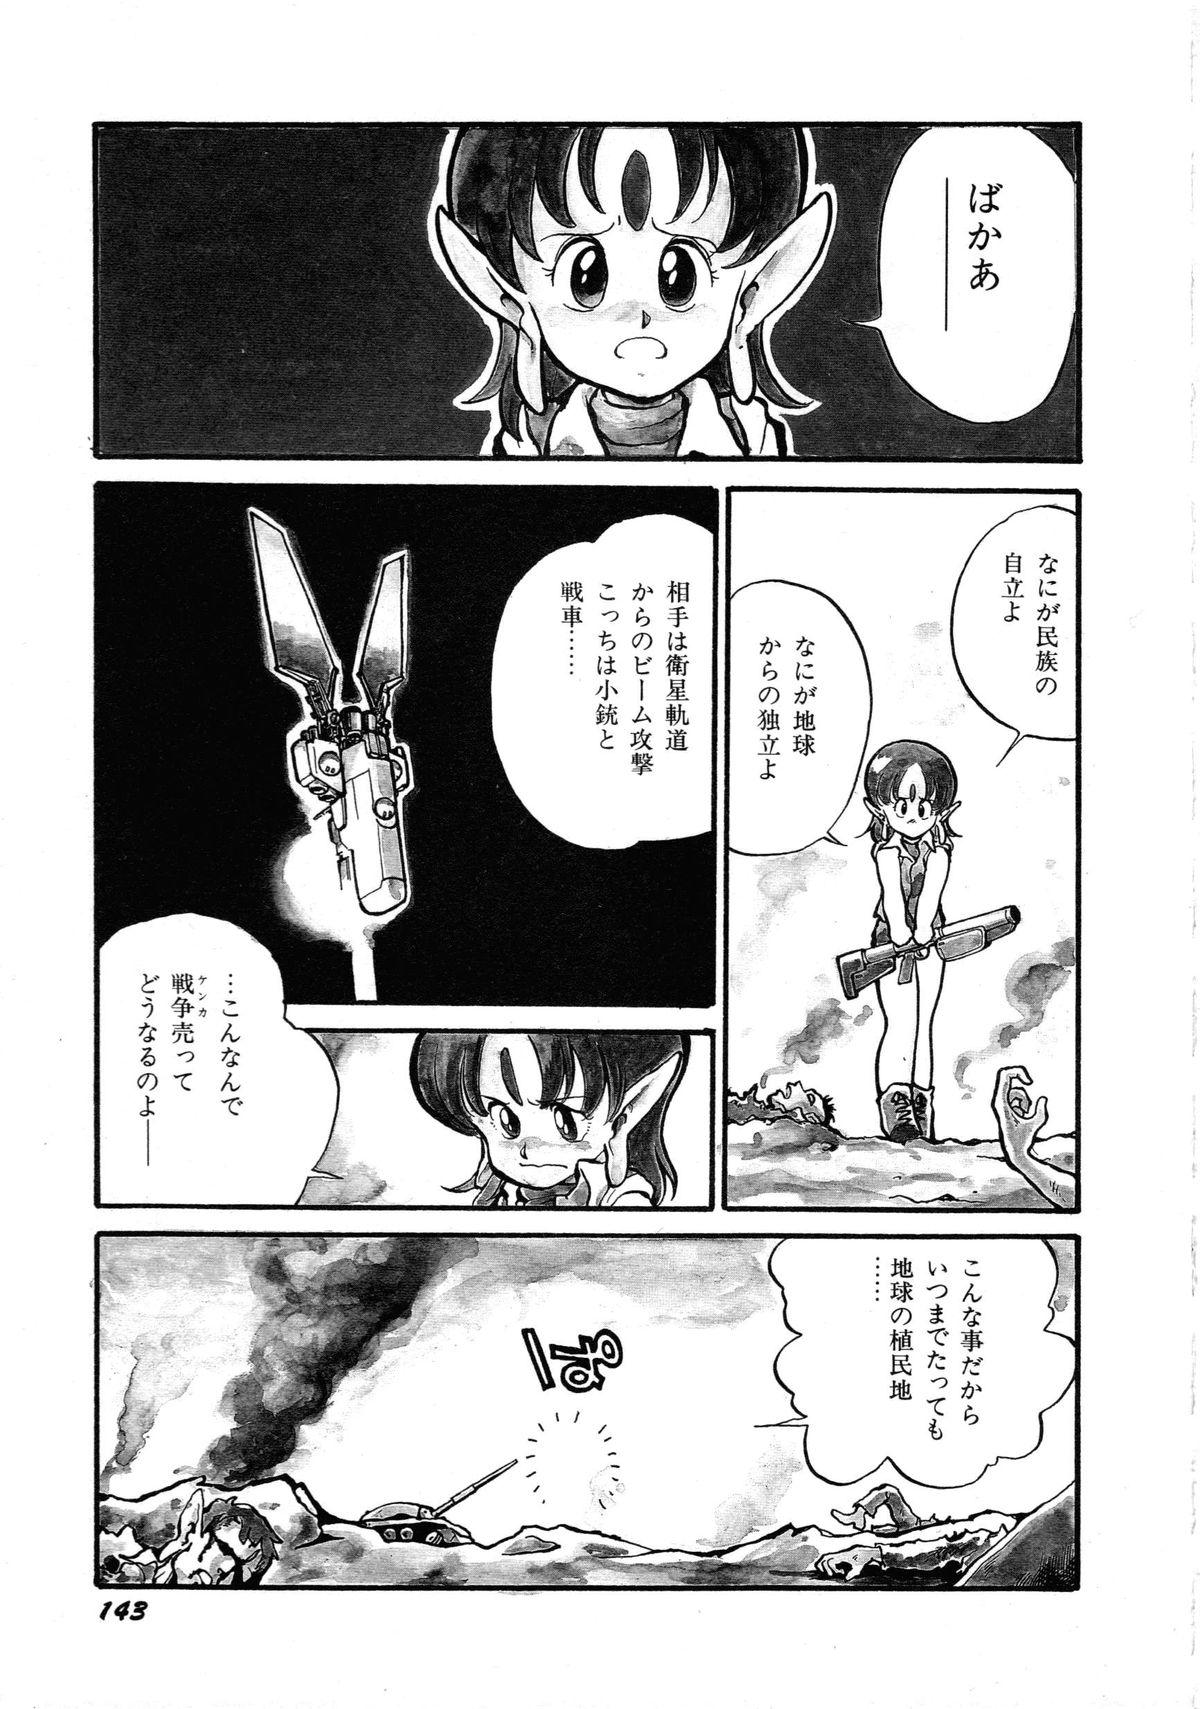 [Anthology] Robot & Bishoujo Kessakusen - Lemon People 1982-1986 146